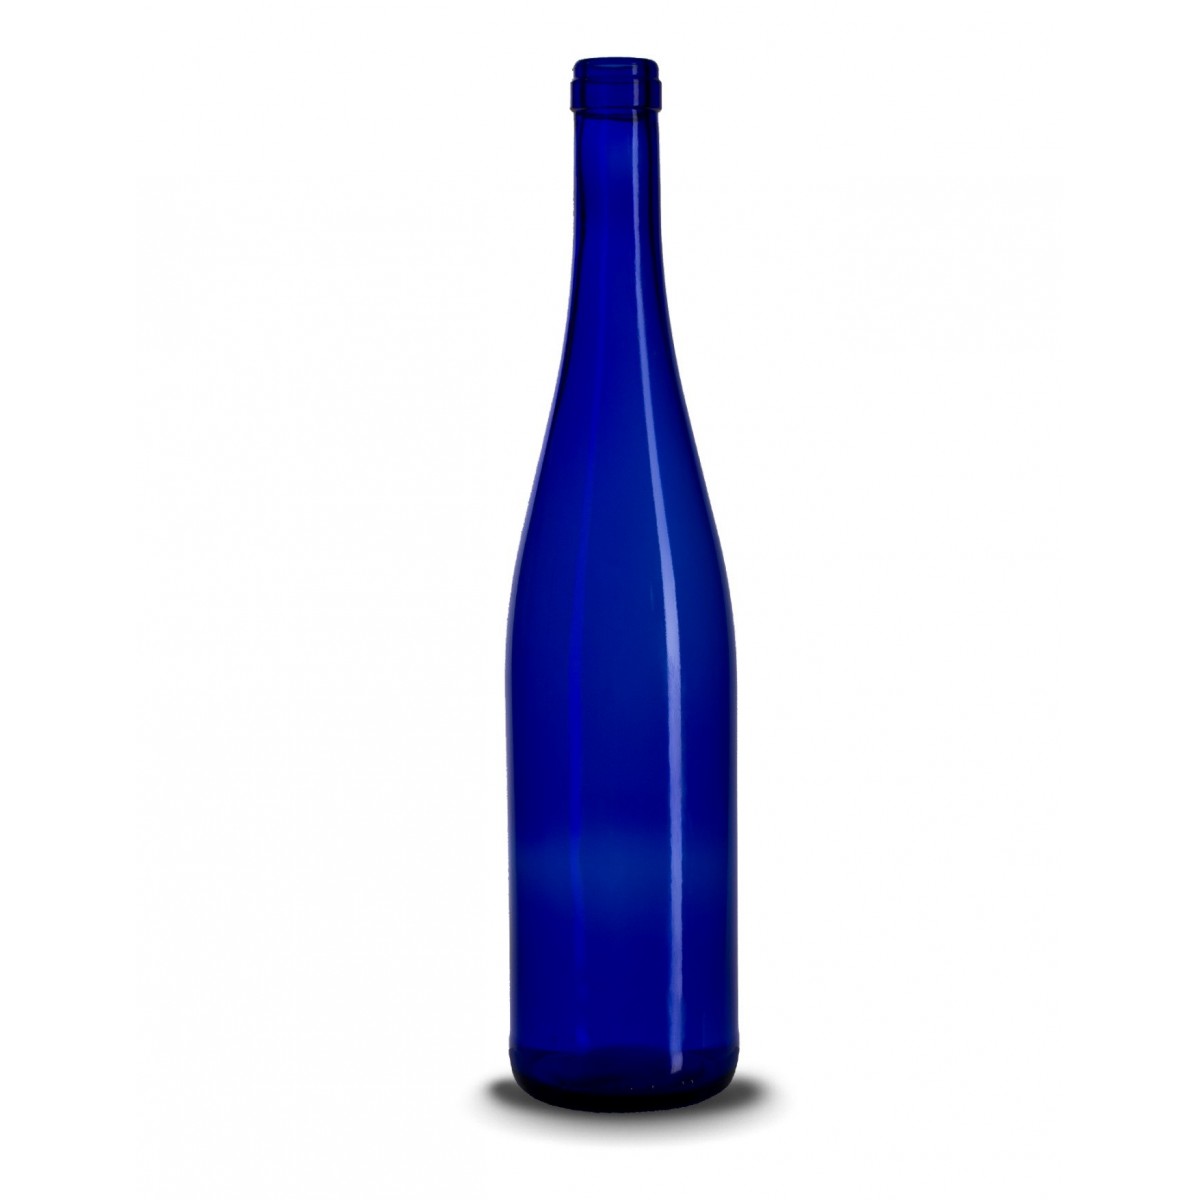 Stiklinis vyno butelis (schlegel) 750 ml, šviesiai mėlynas